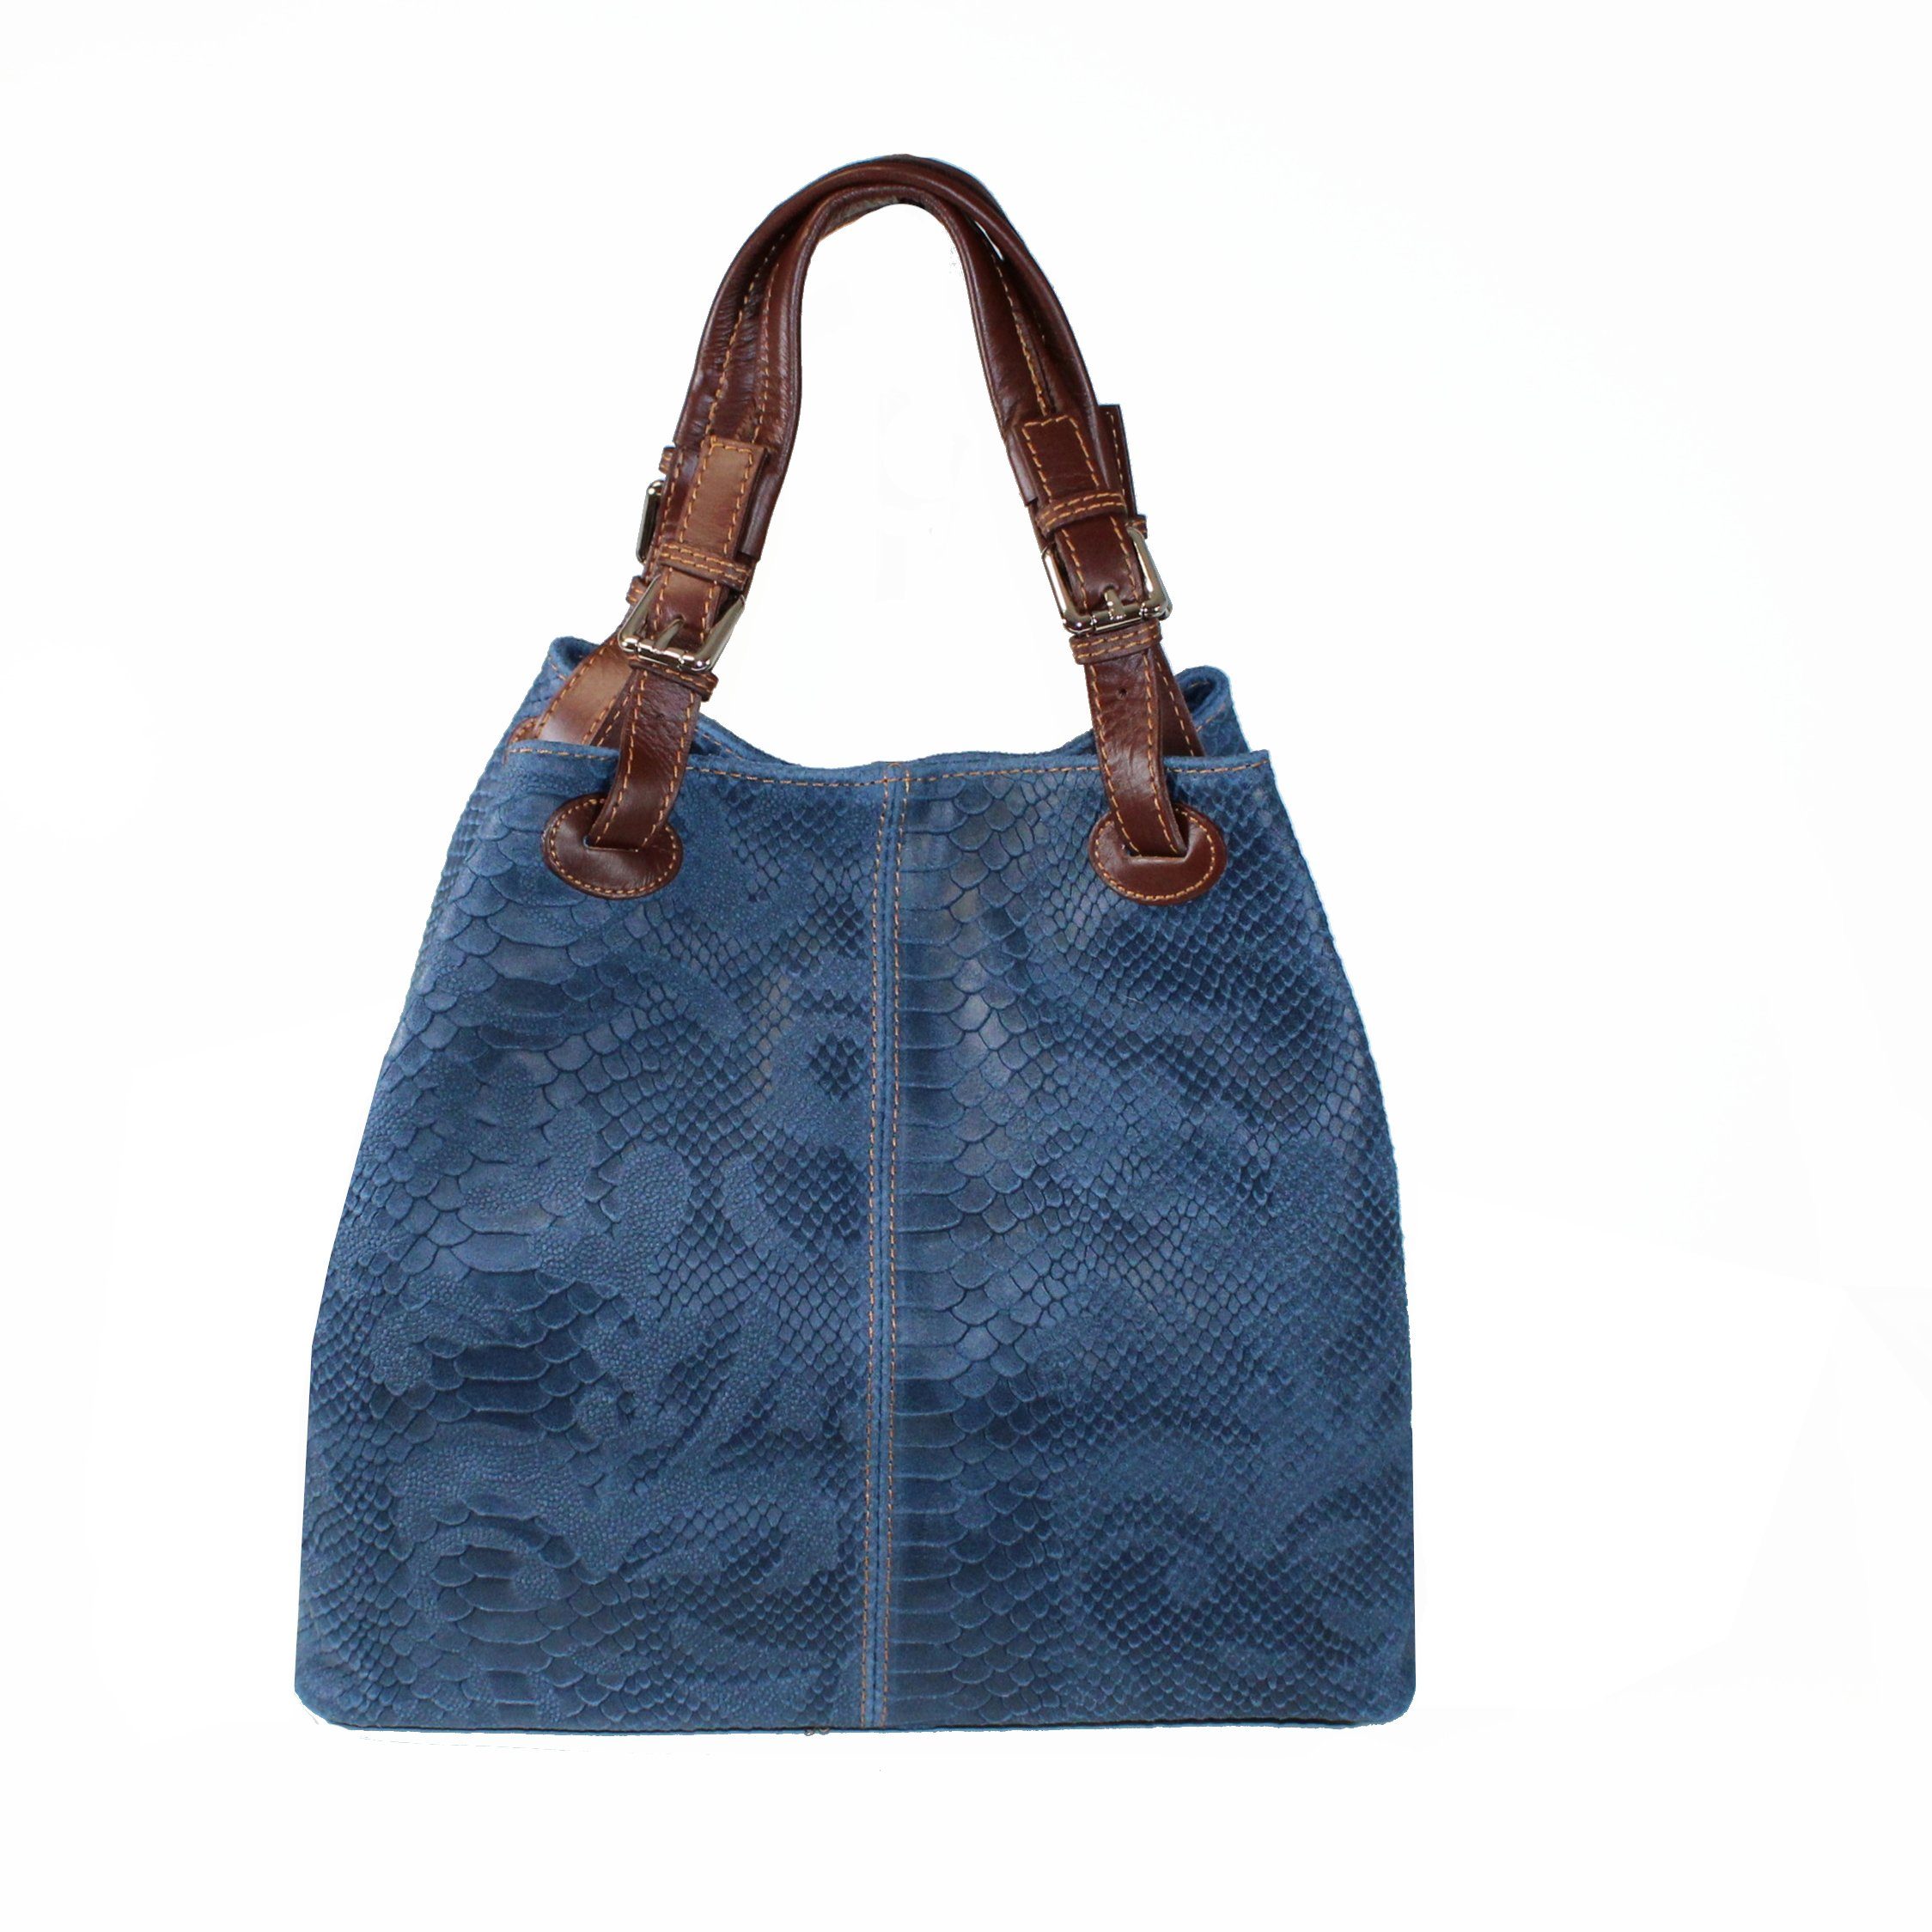 Prägung, Leder in Jeansblau fs6929, Handtasche Italy fs-bags mit Made